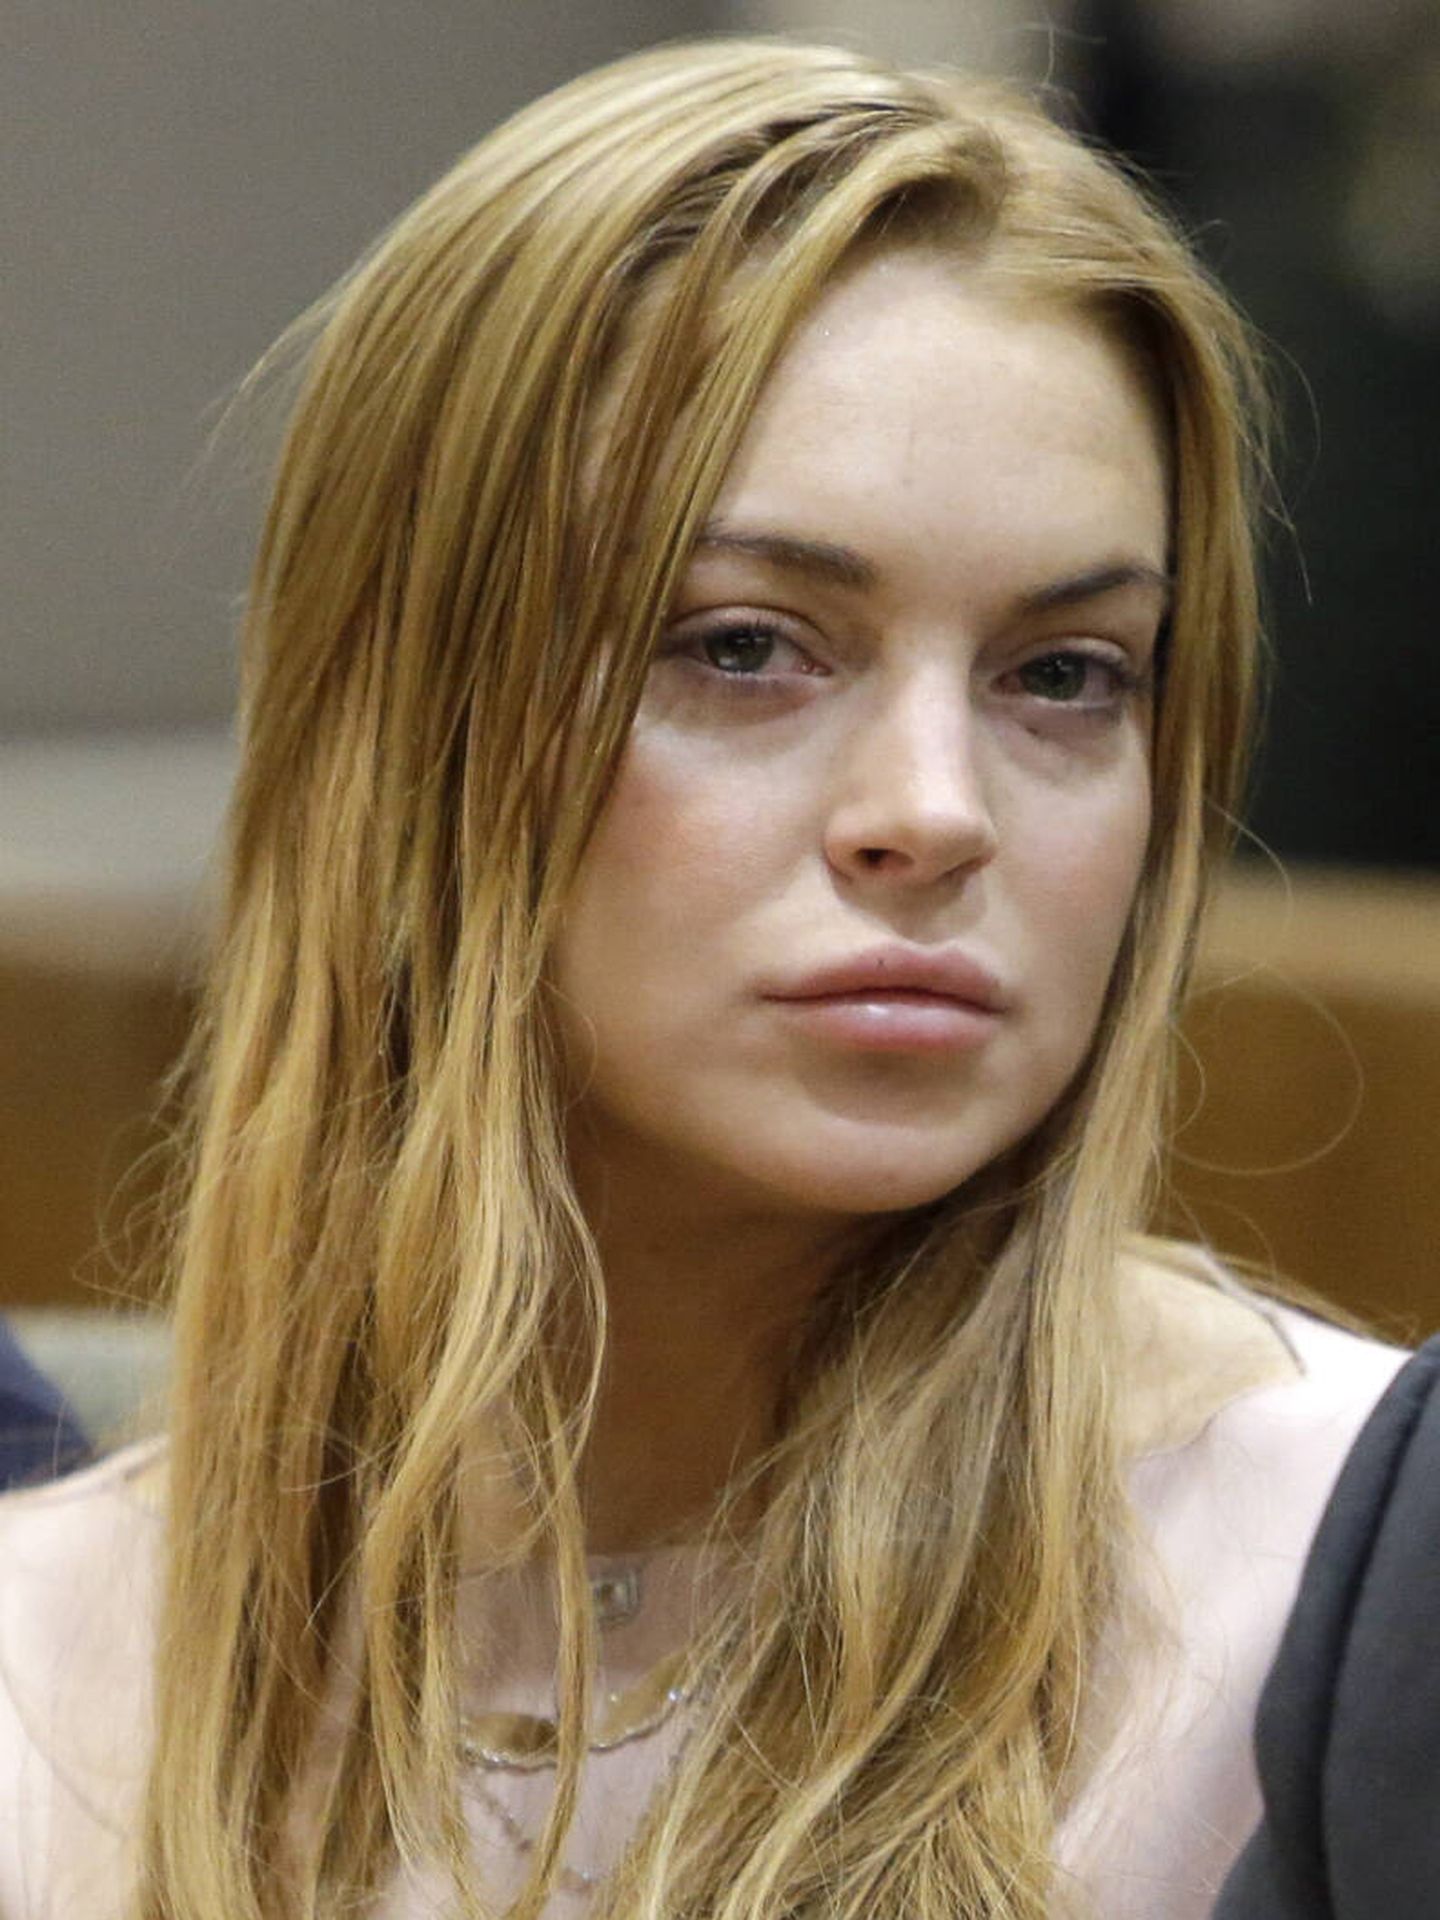 Lindsay Lohan, en otro juicio en 2013. (Getty/Pool)